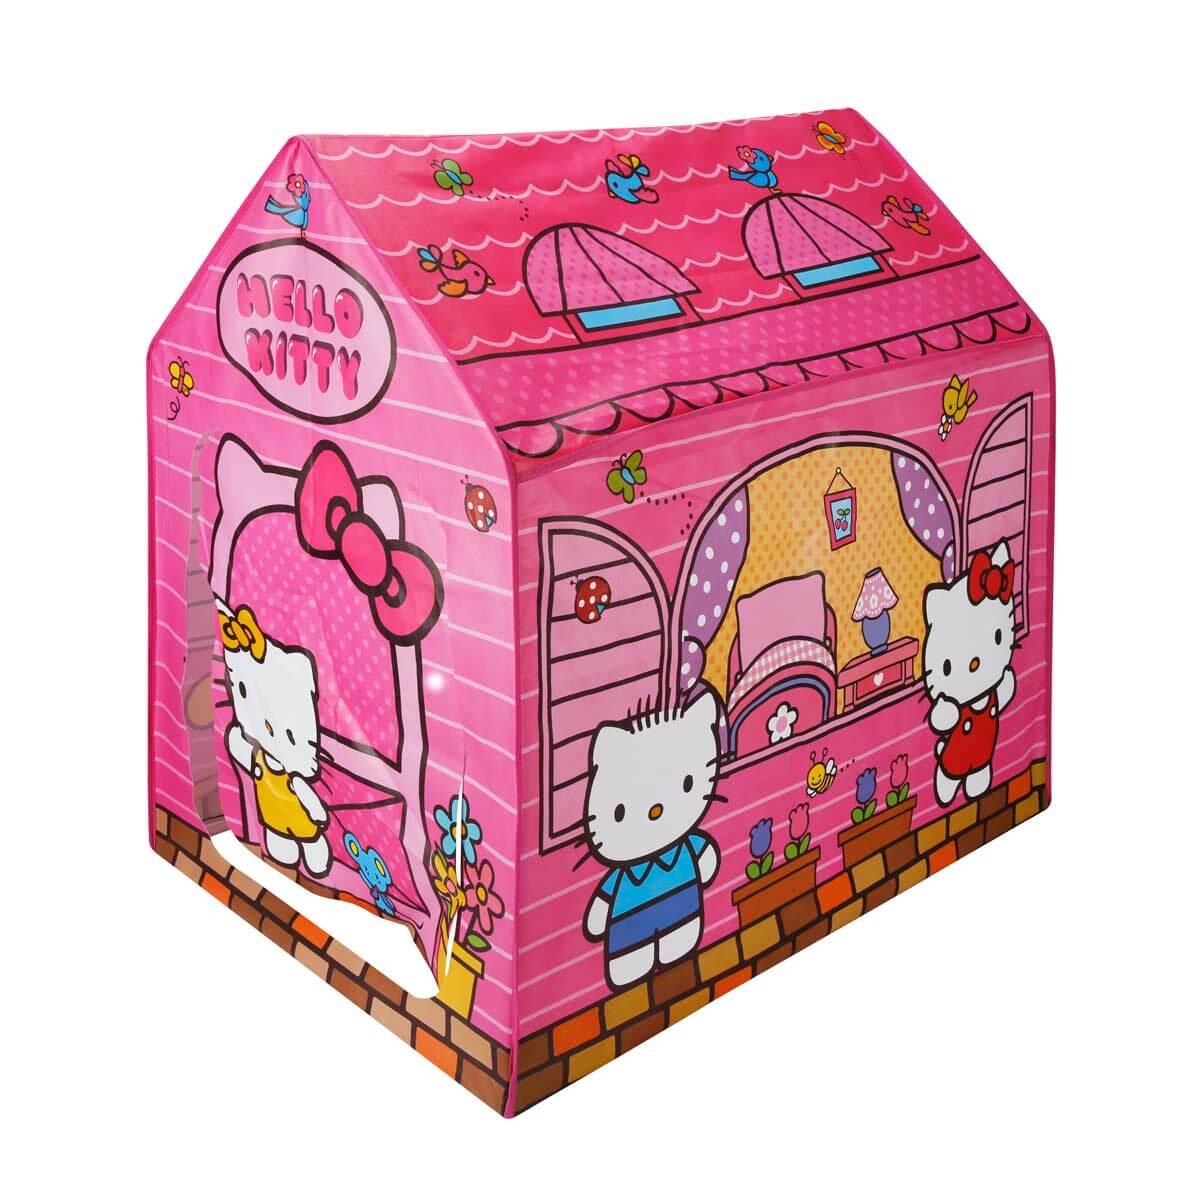 Sunman Hello Kitty Oyun Çadırı Pembe